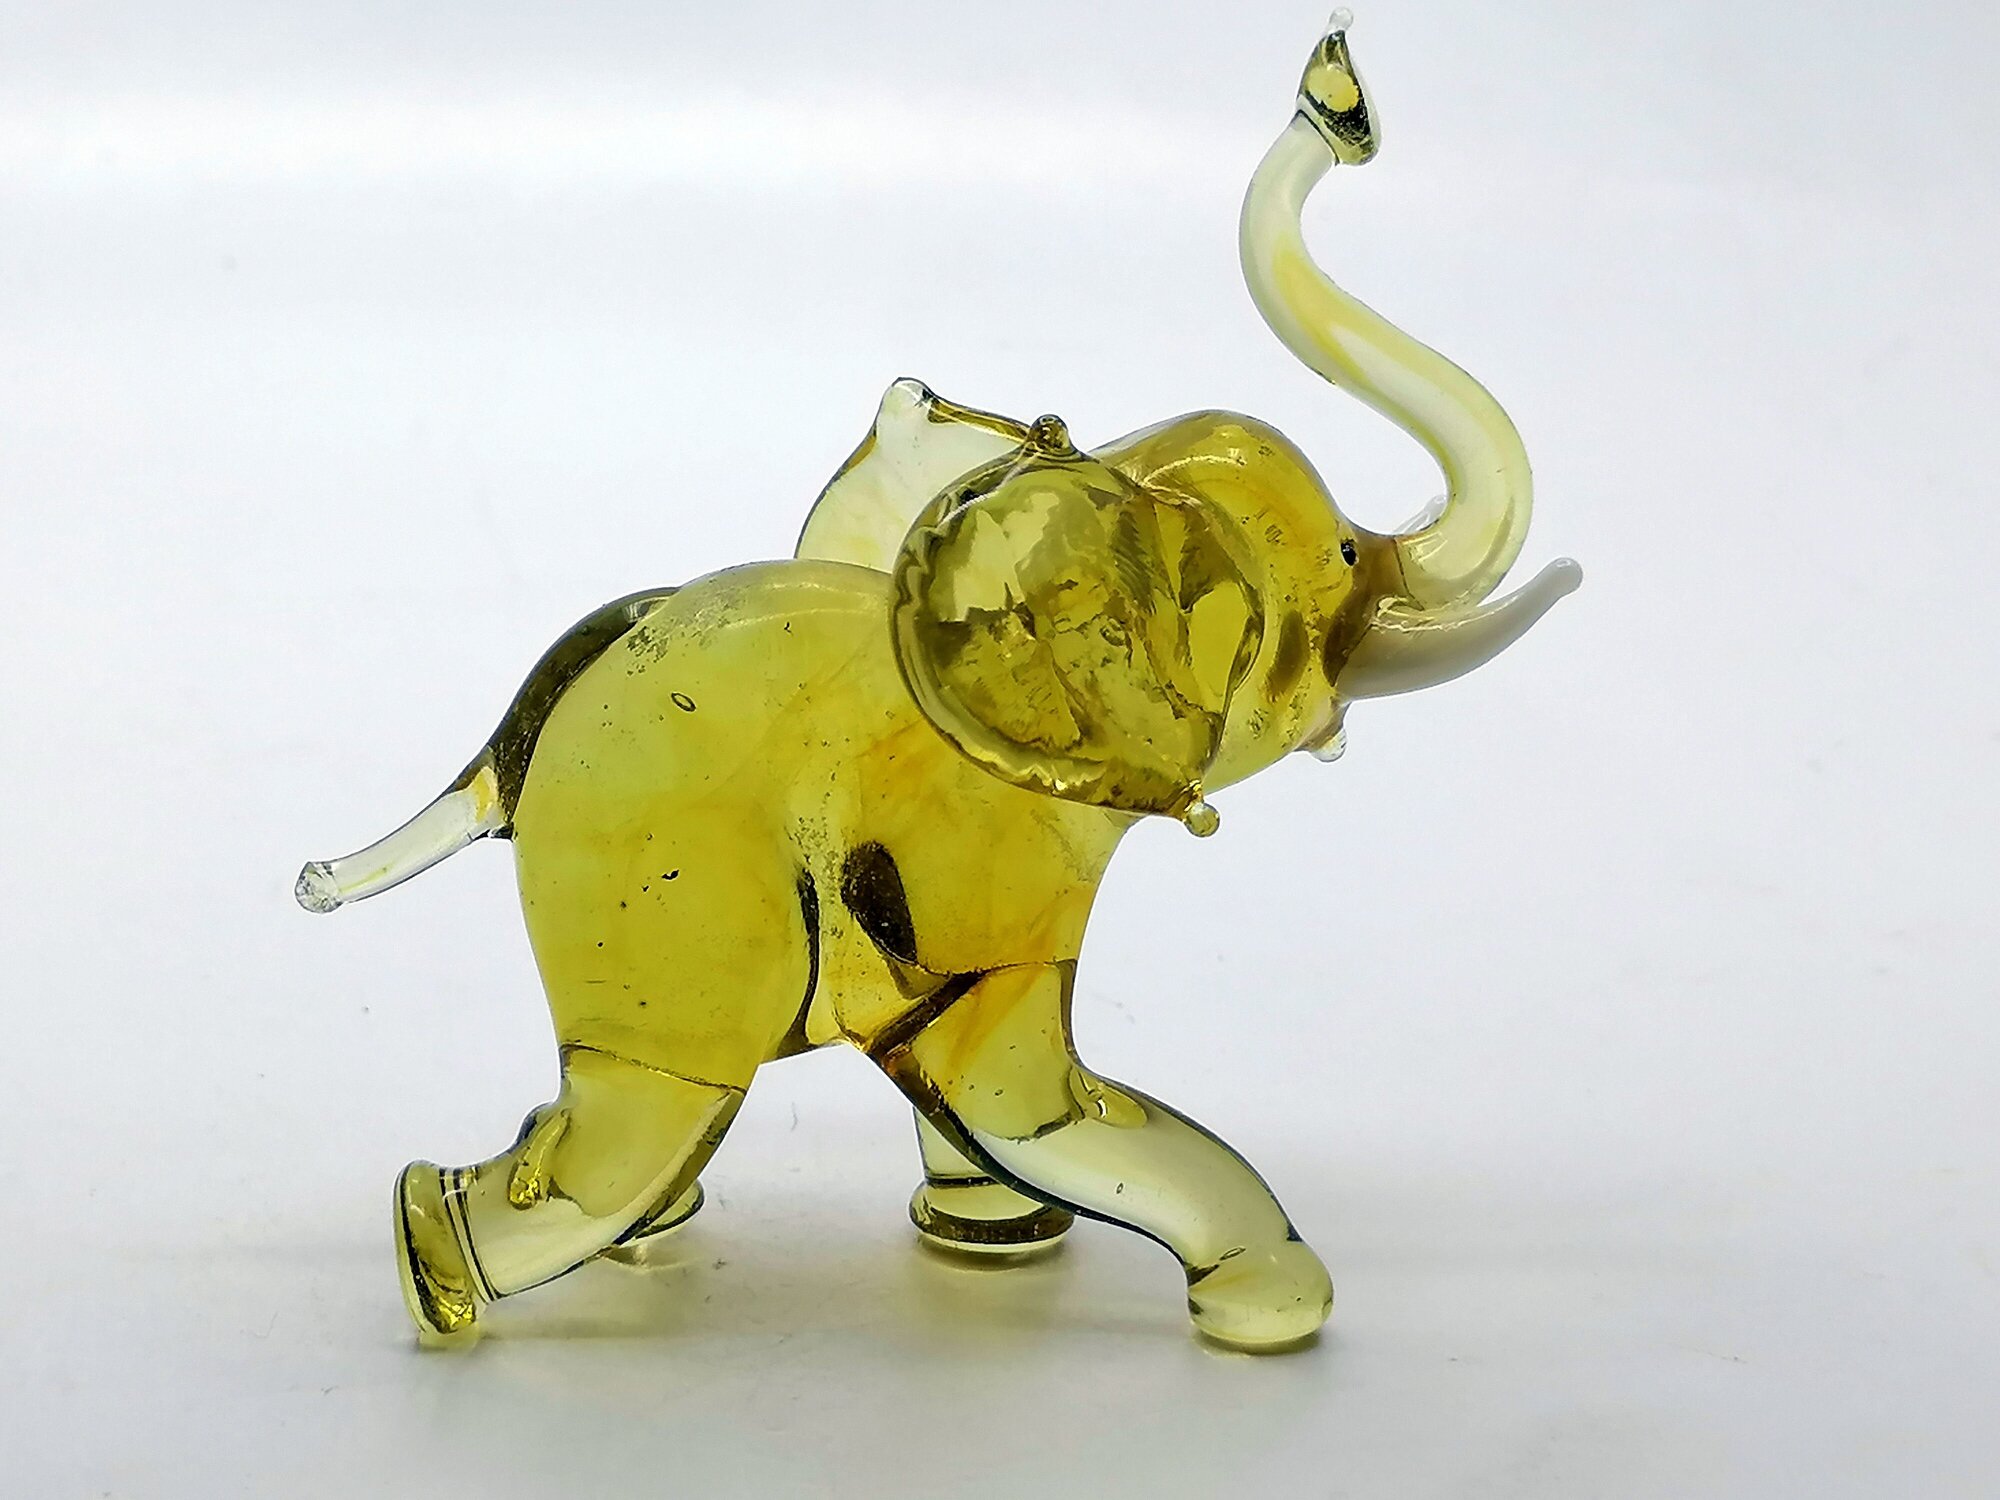 Слон/ статуэтка стеклянная/ сувенир из стекла/ слон сувенир/фигурка из стекла